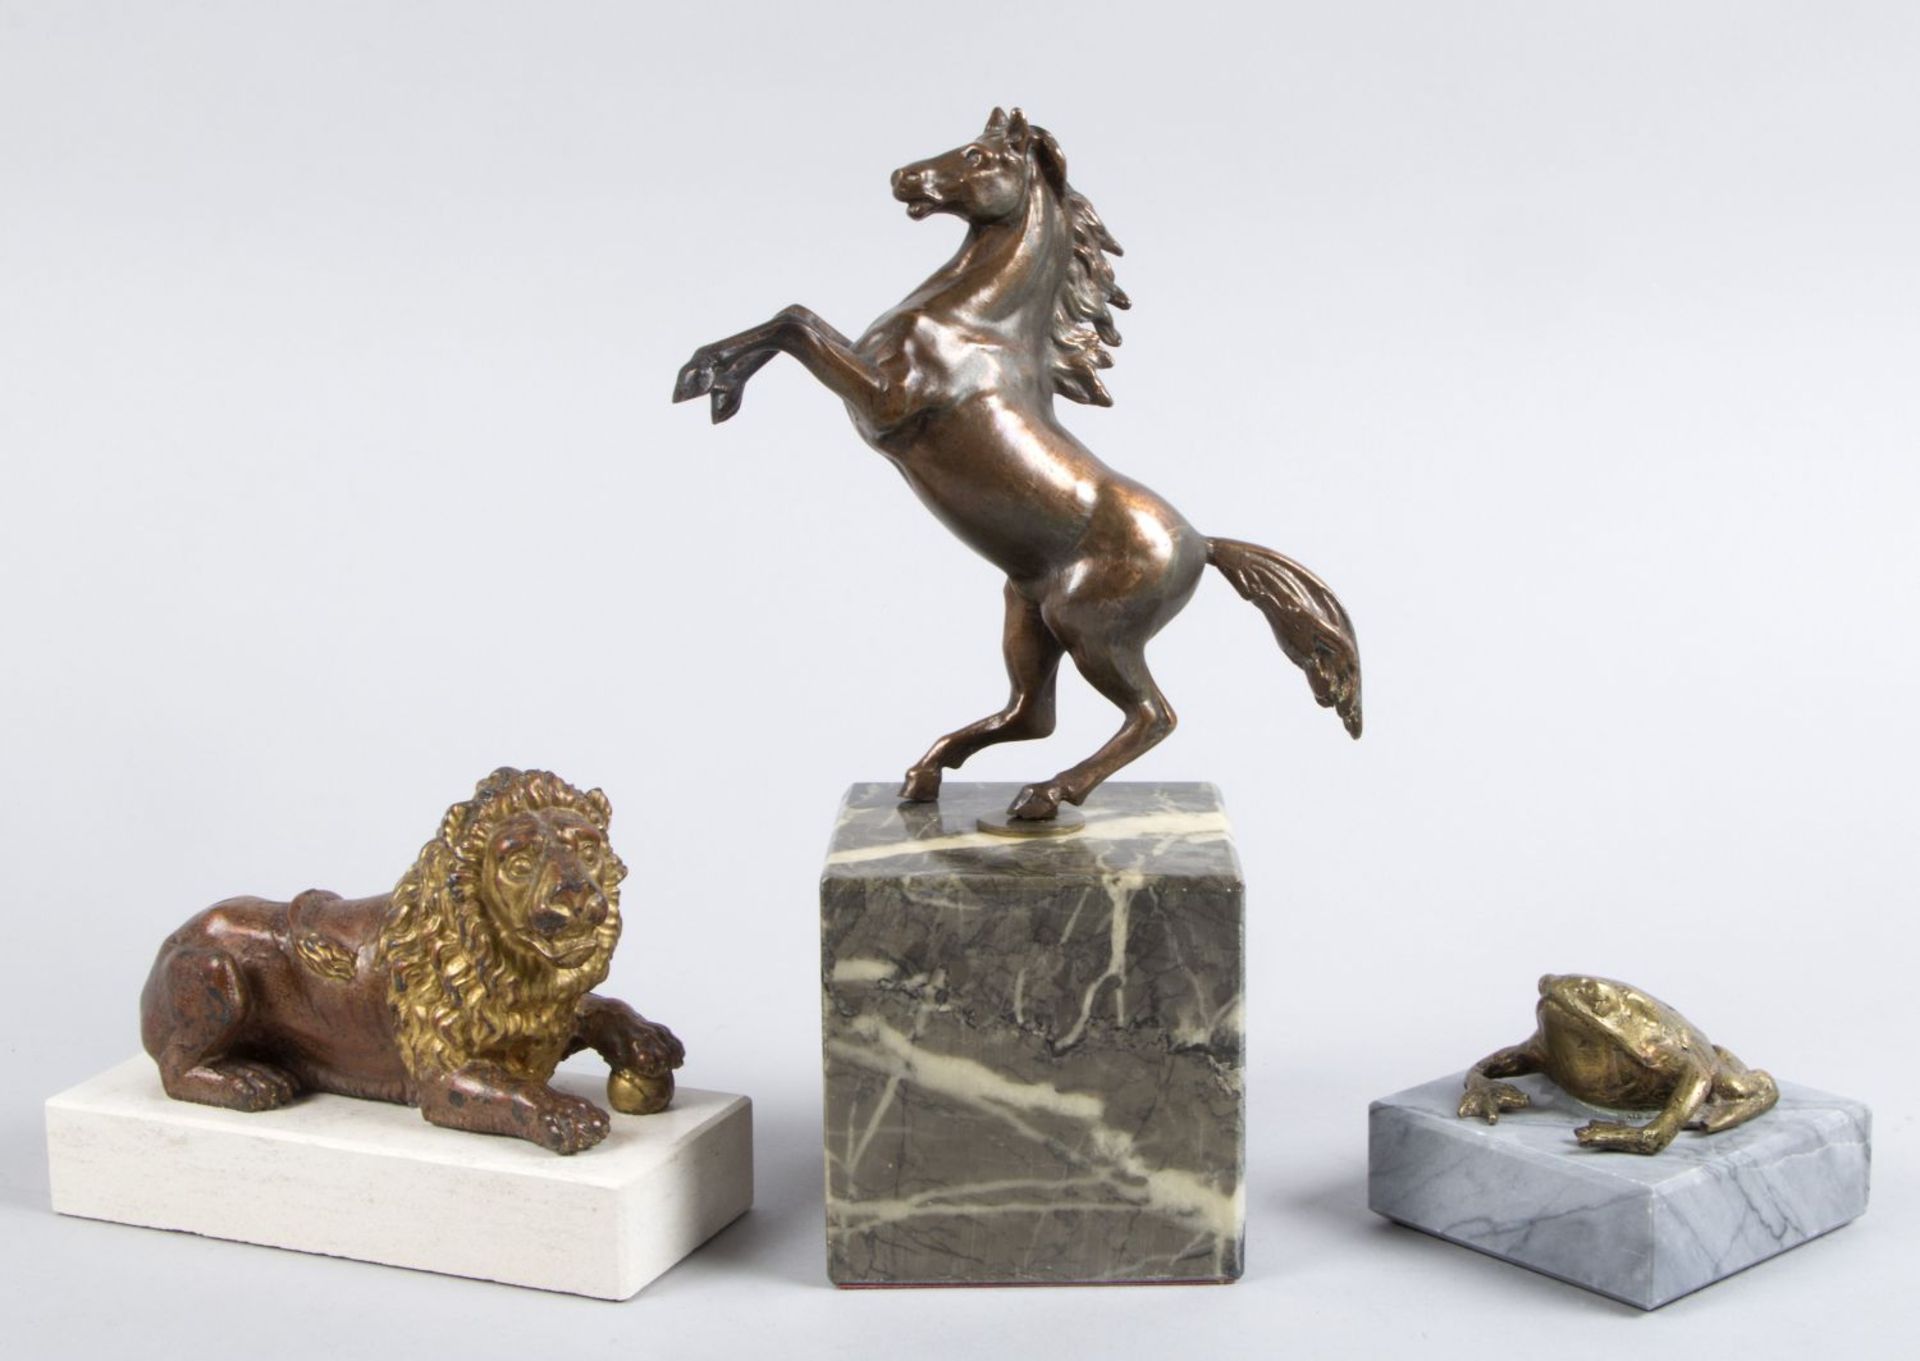 Unbekannt, 20. Jh. Steigendes Pferd. Löwe. Kröte. 3 Metallskulpturen. H. bis 13 cm. Auf Steinsockel.